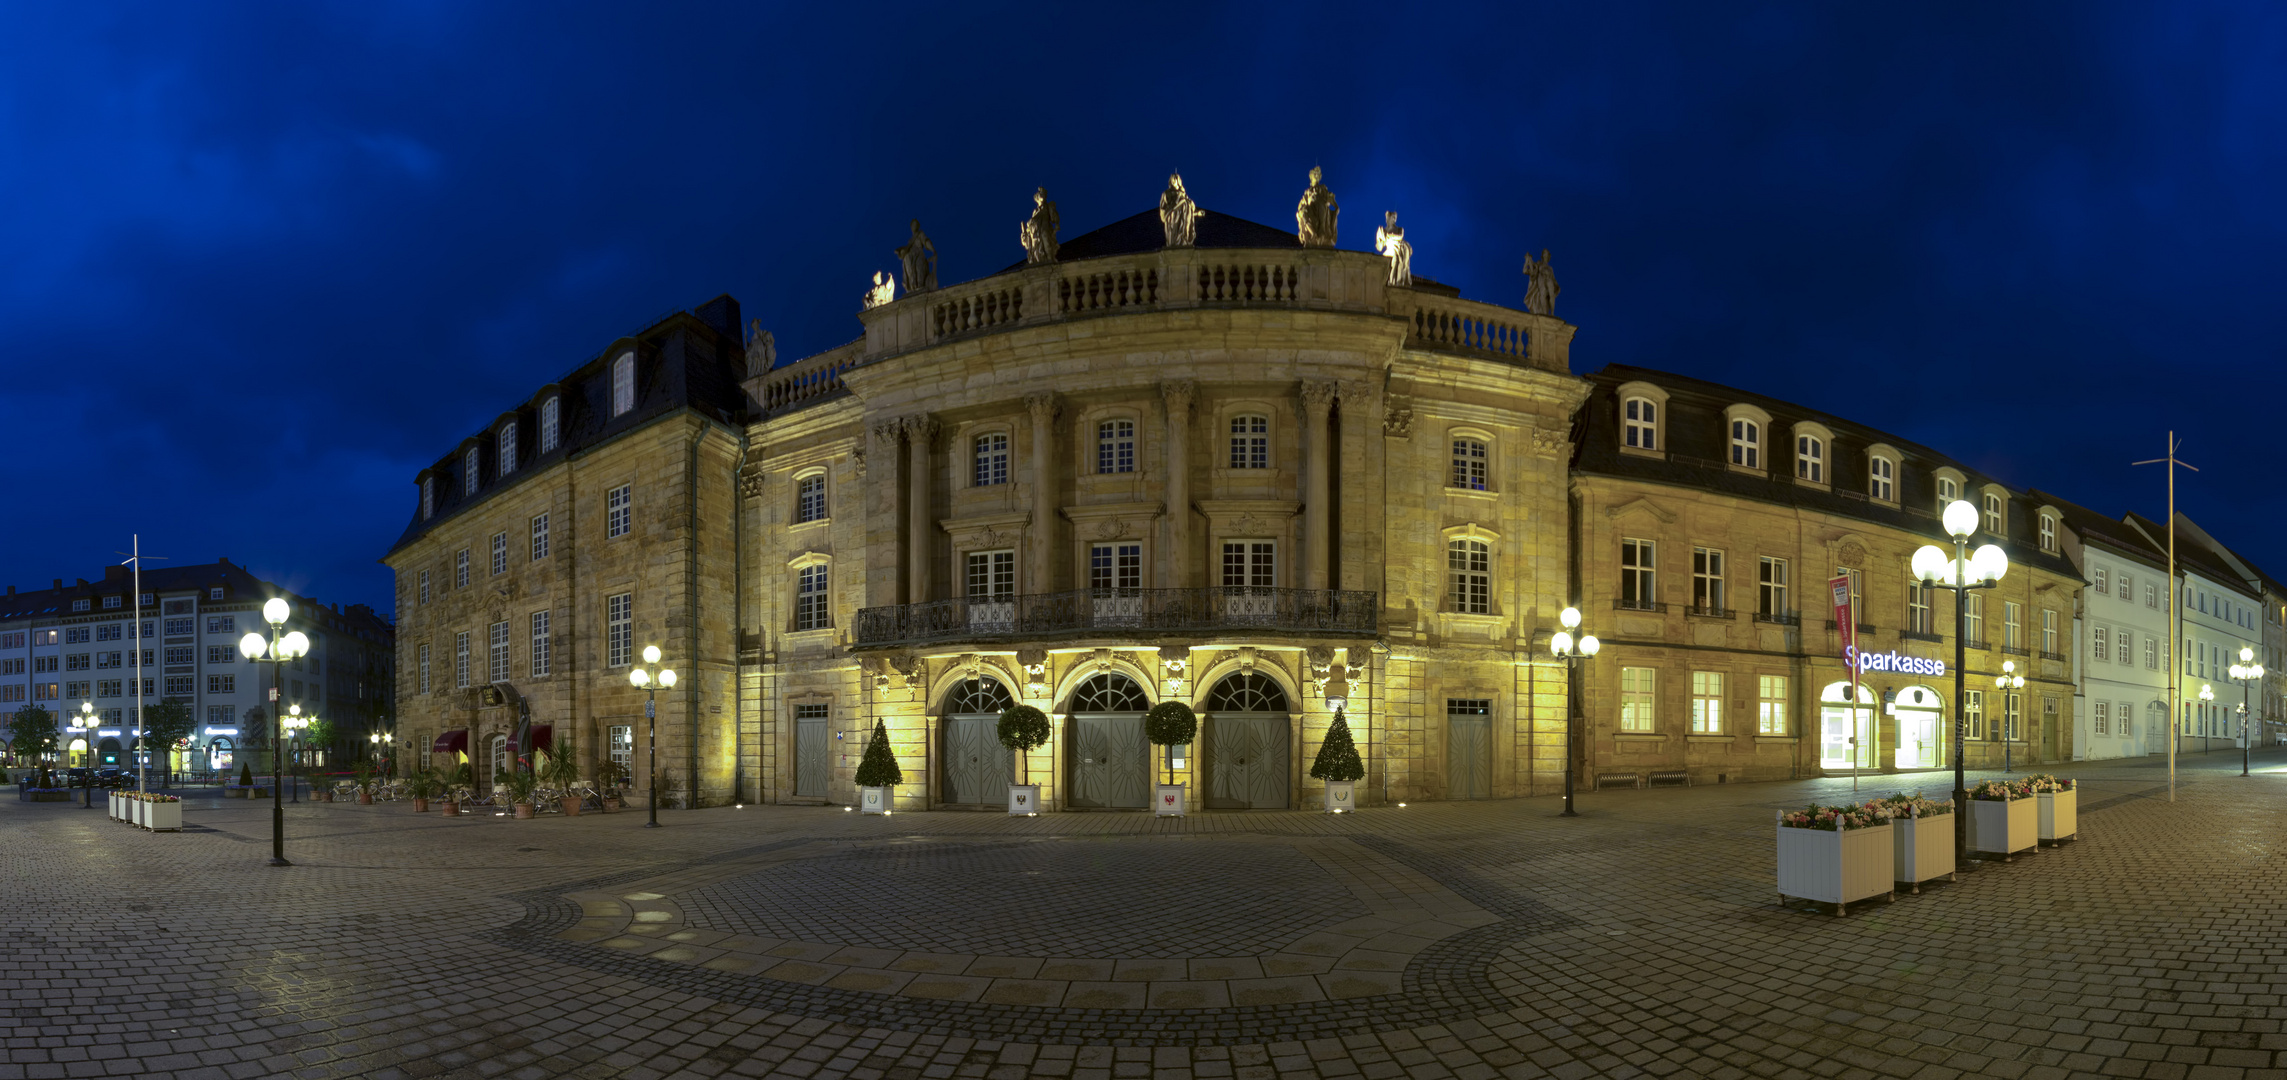 Markgräfliche Opernhaus - Bayreuth